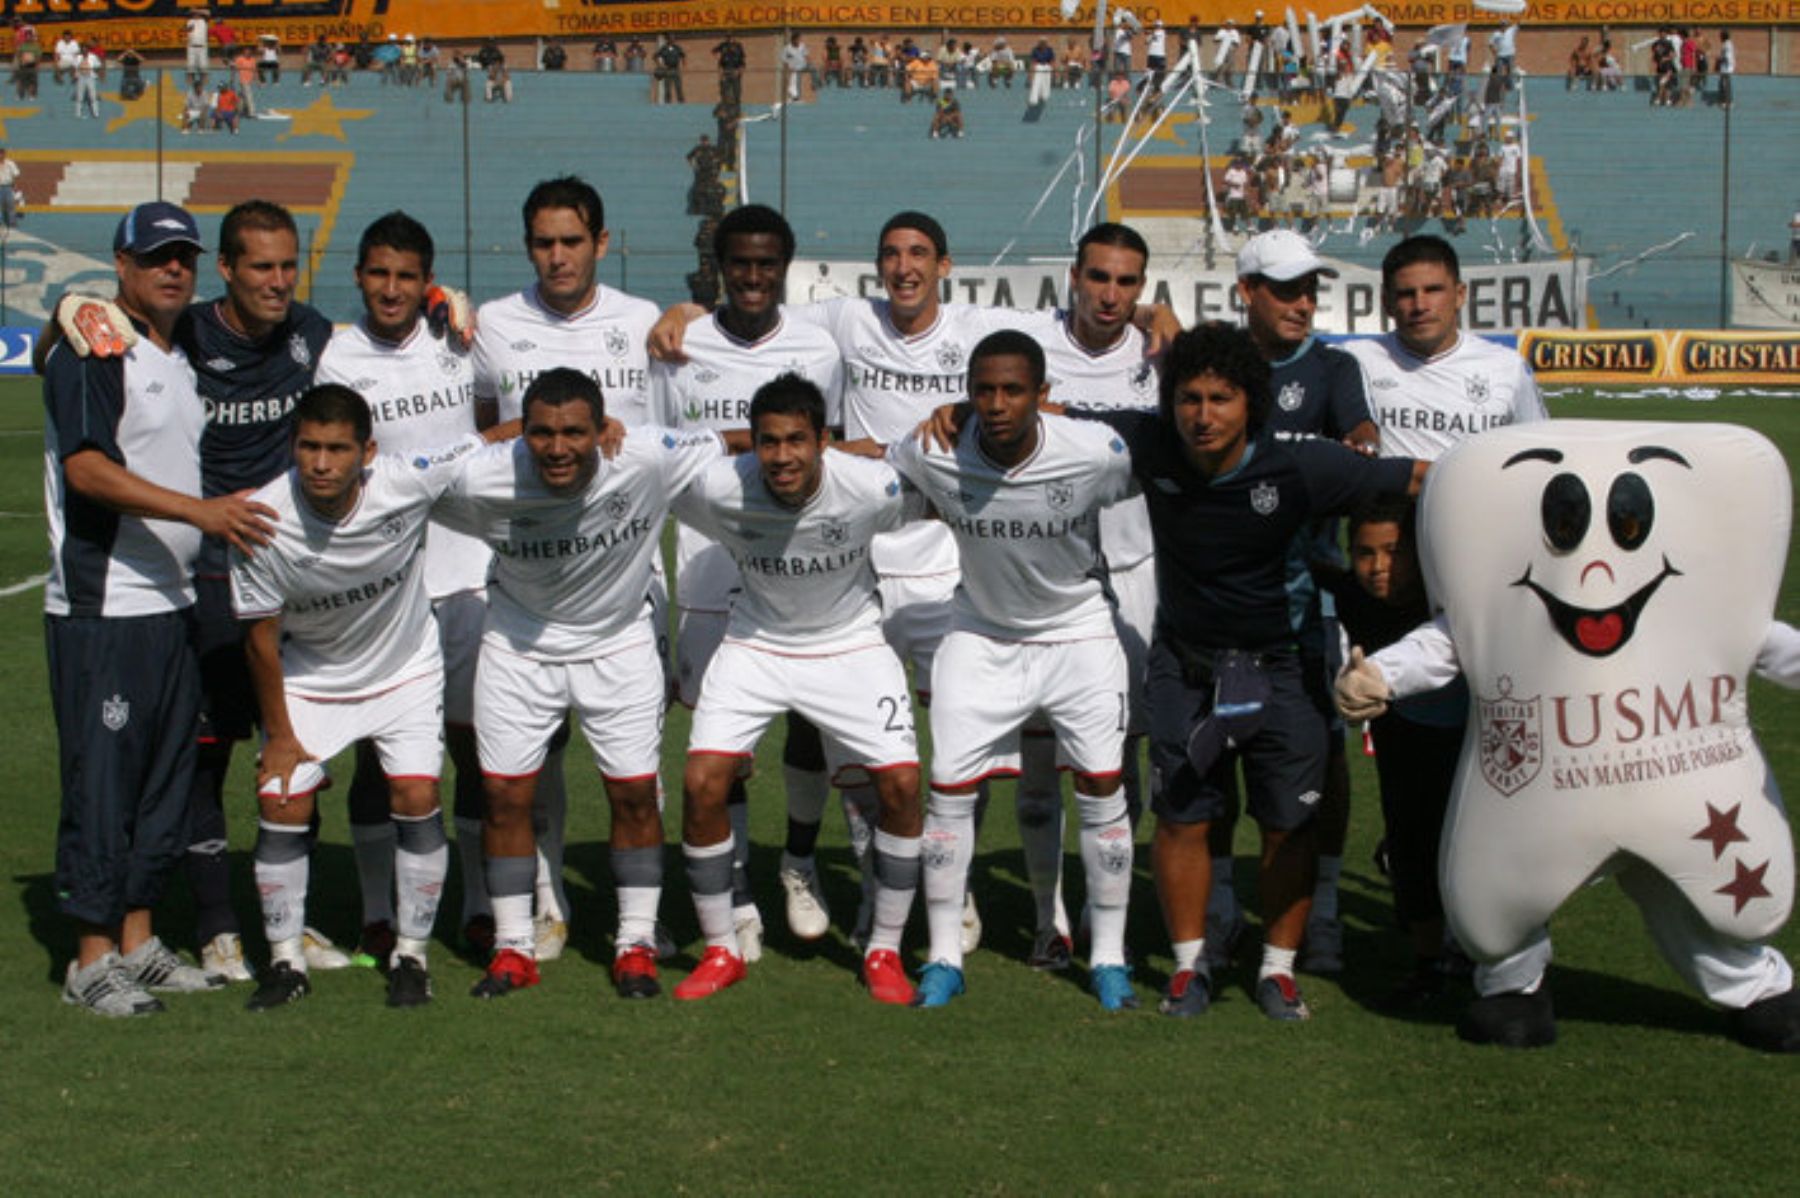 Resultado de imagen para San Martin de Peru 2019 equipo de futbol